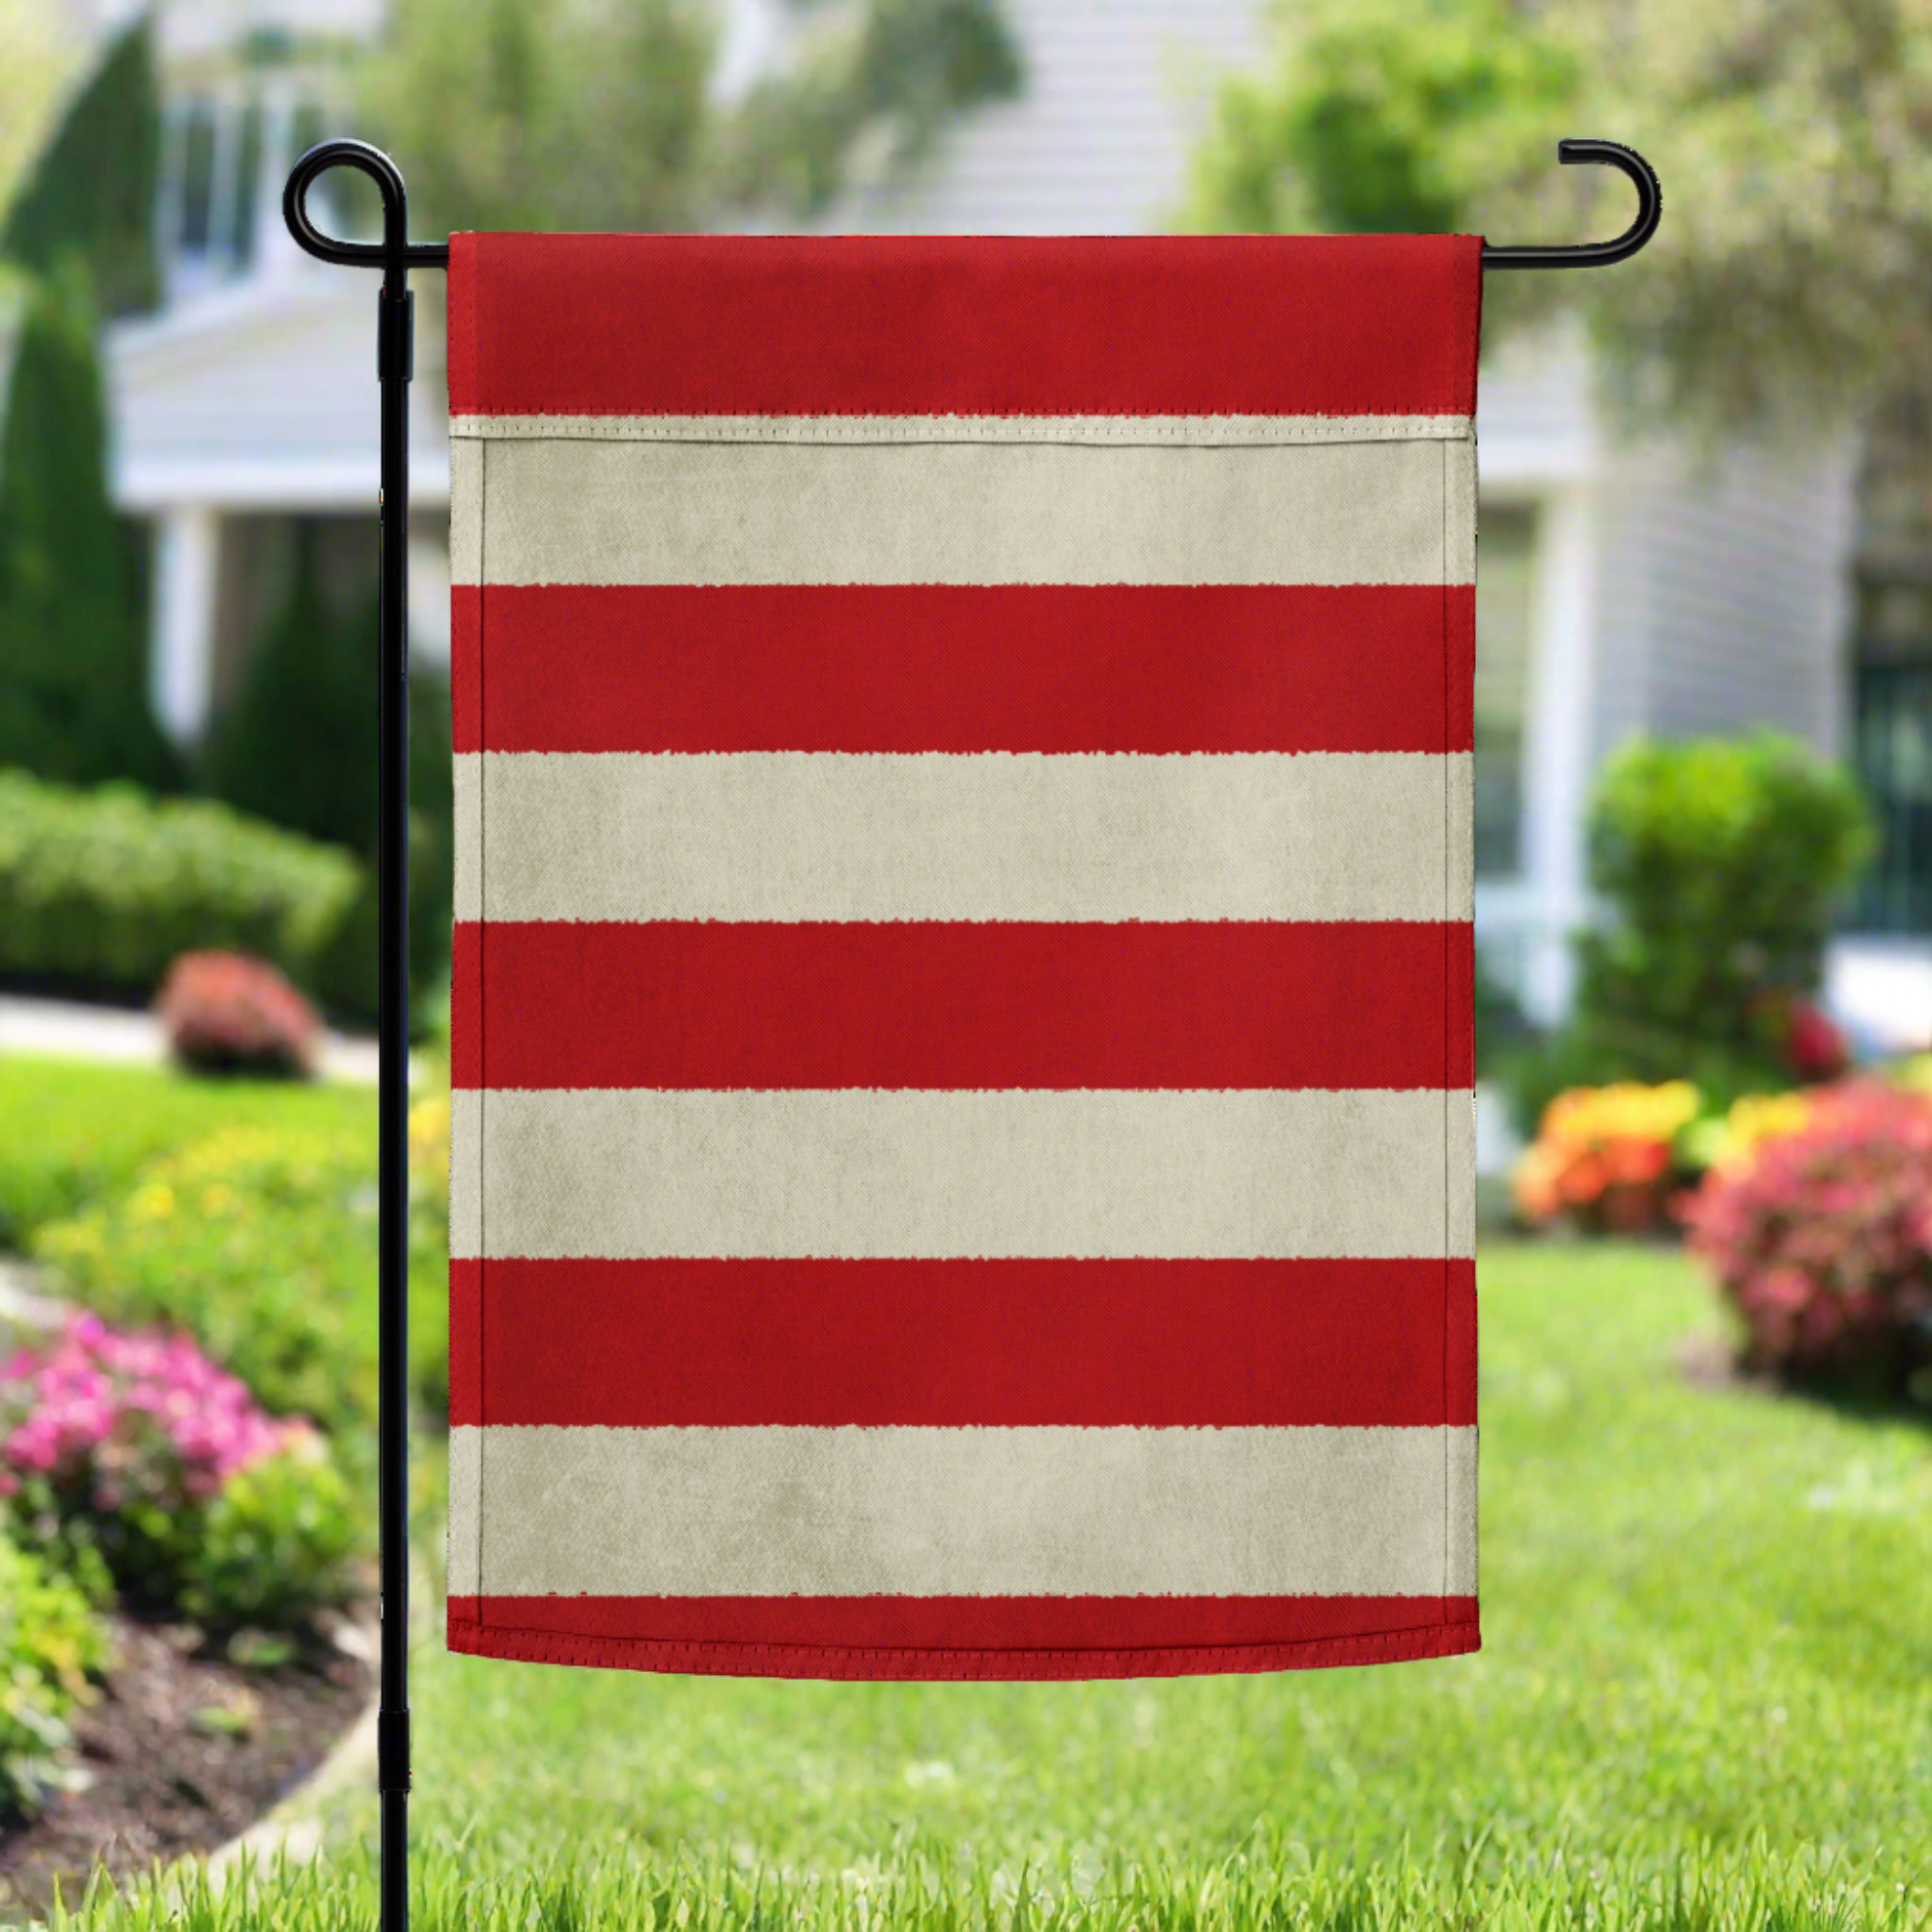 Sons of Liberty Garden flag